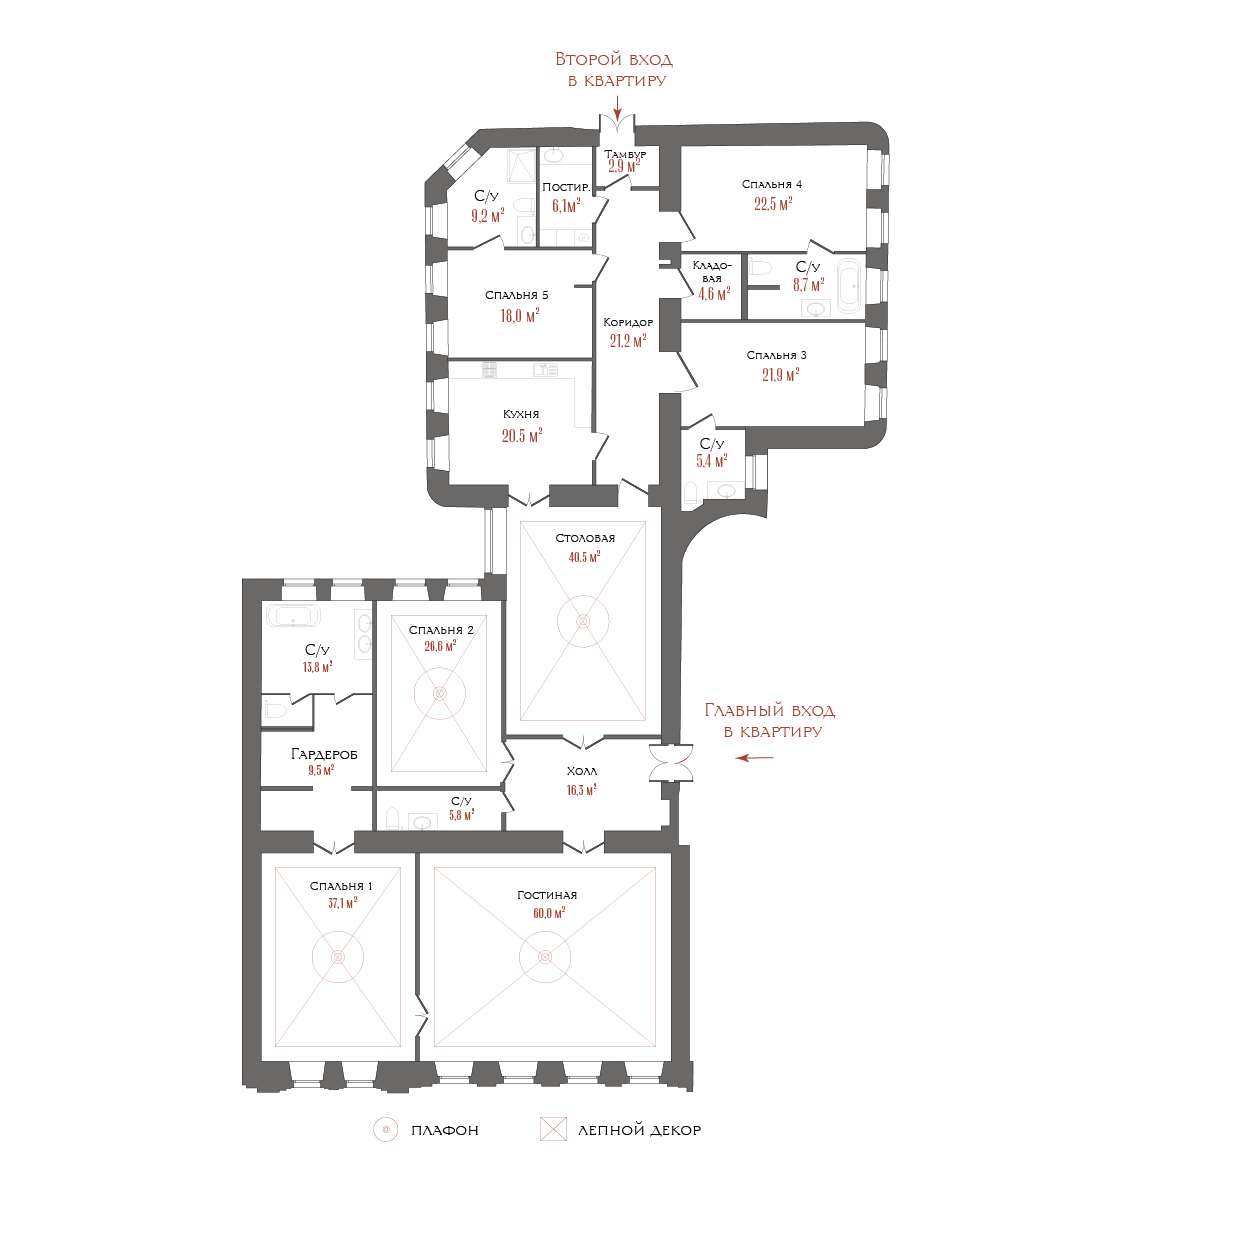 7-комнатная квартира  №10 в Три грации: 350.82 м², этаж 5 - купить в Санкт-Петербурге